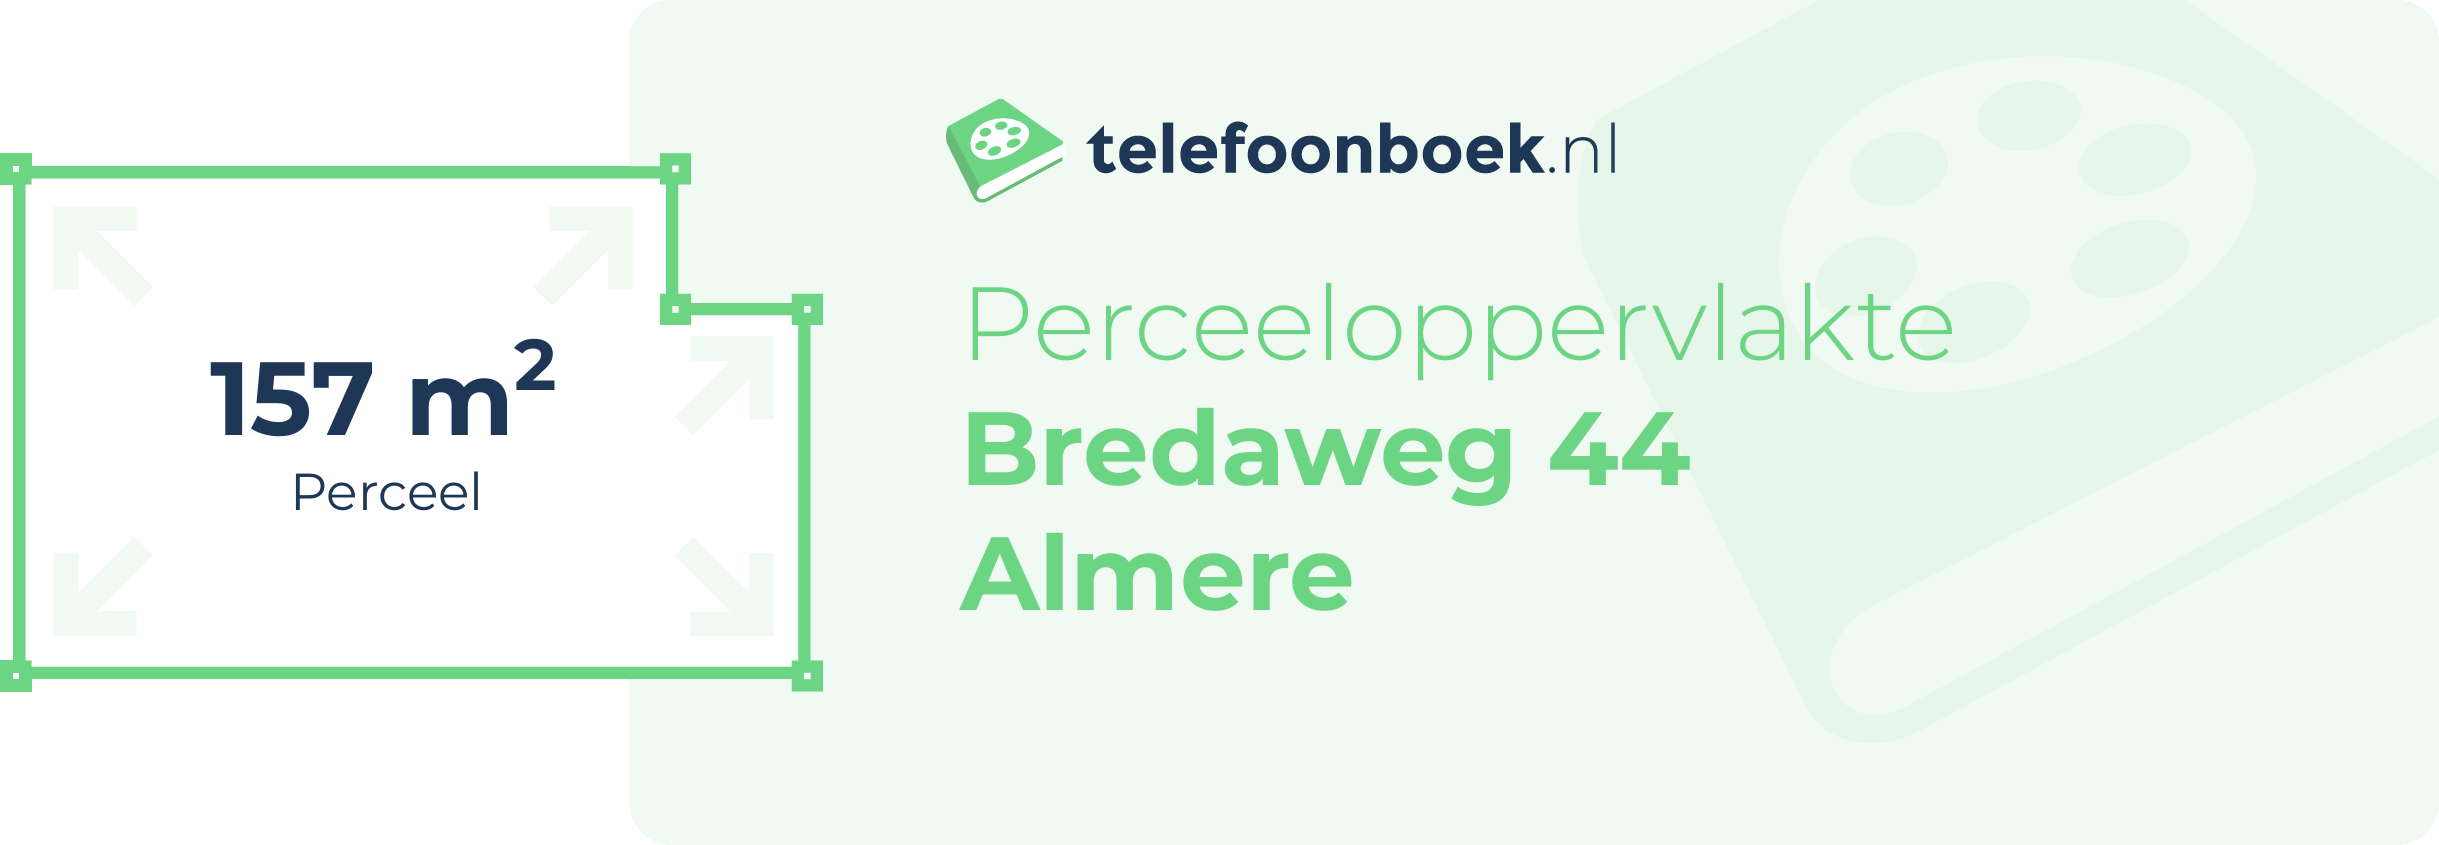 Perceeloppervlakte Bredaweg 44 Almere